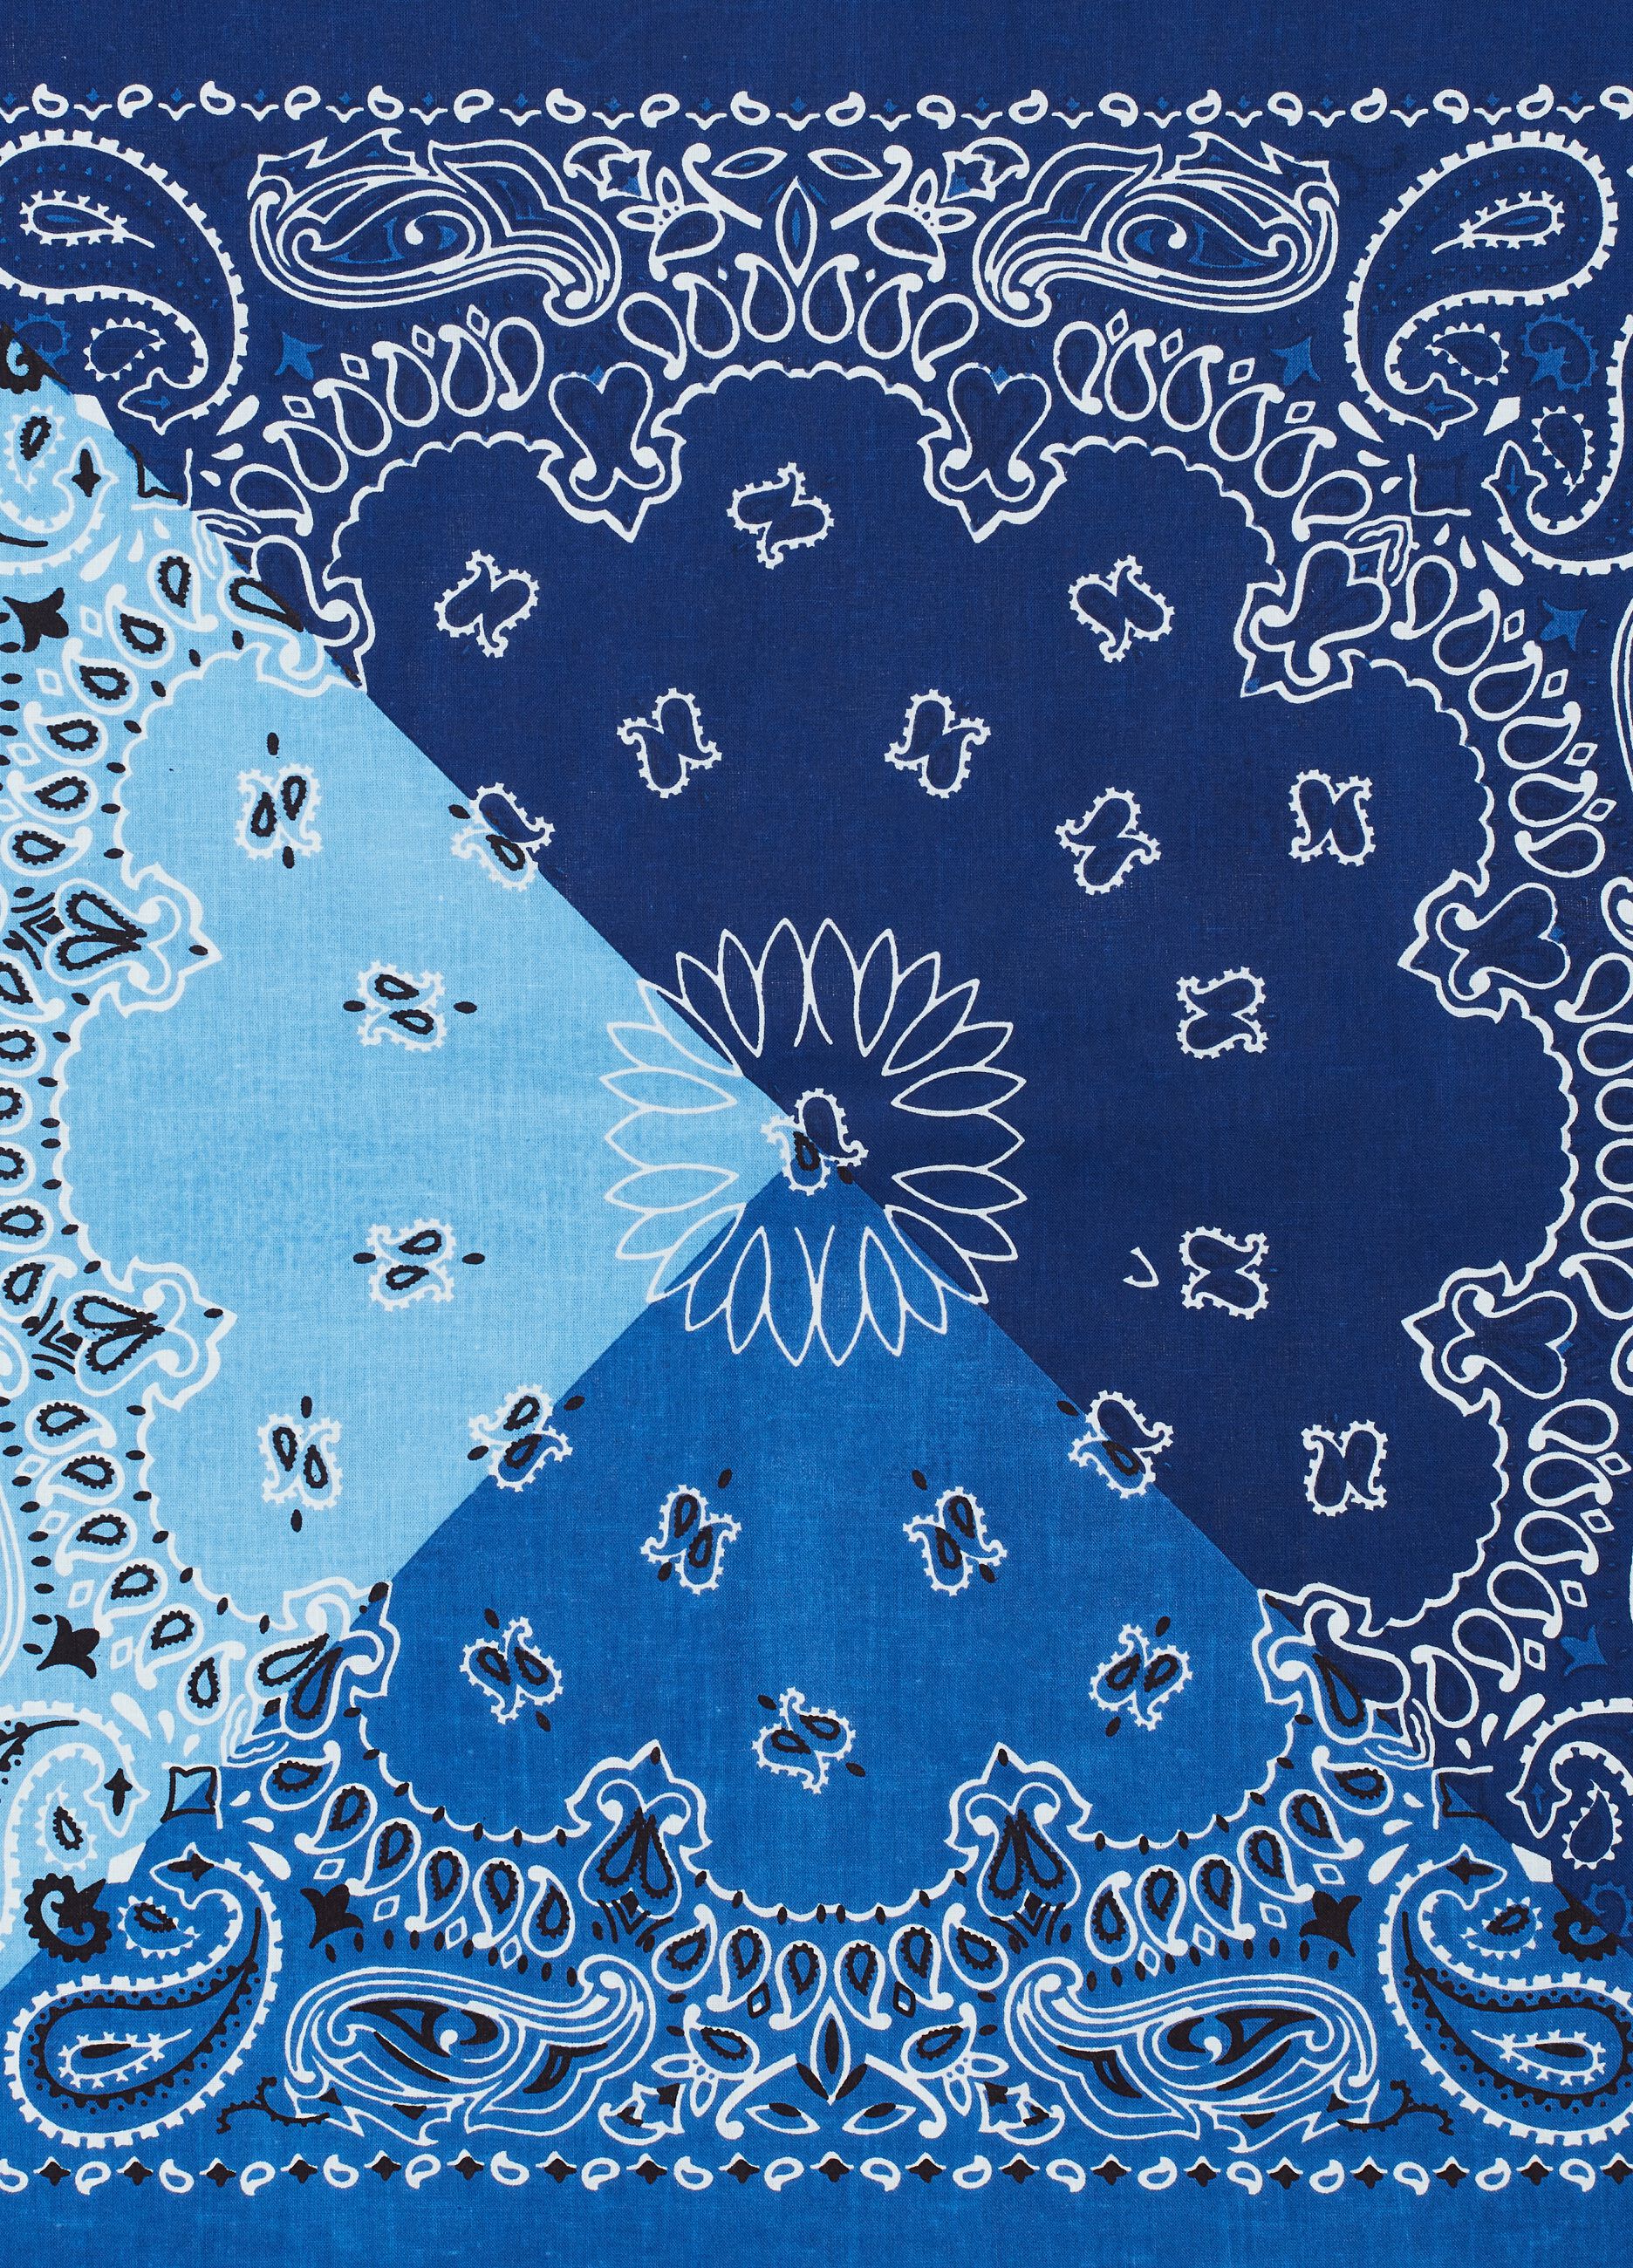 Cotton bandana with paisley pattern